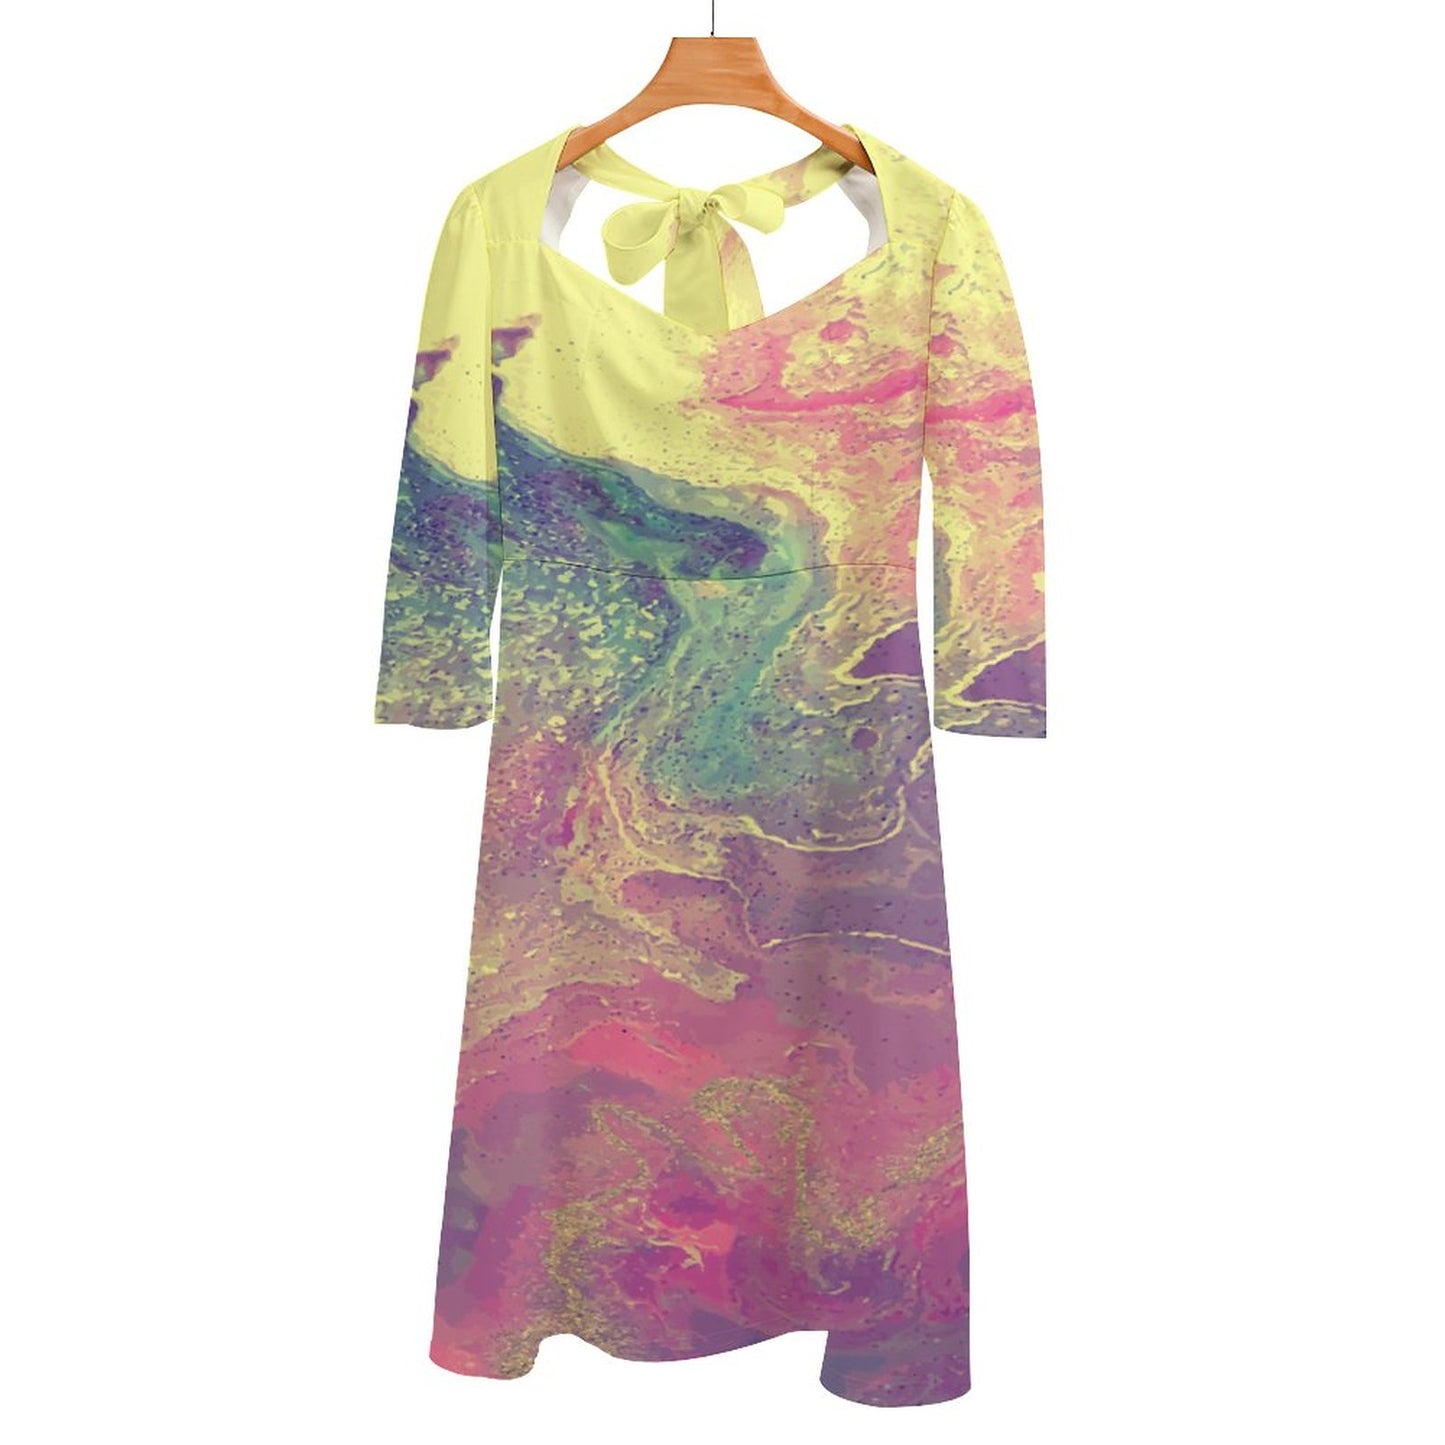 Online DIY Dress for Women Flare Dress Color Fluid